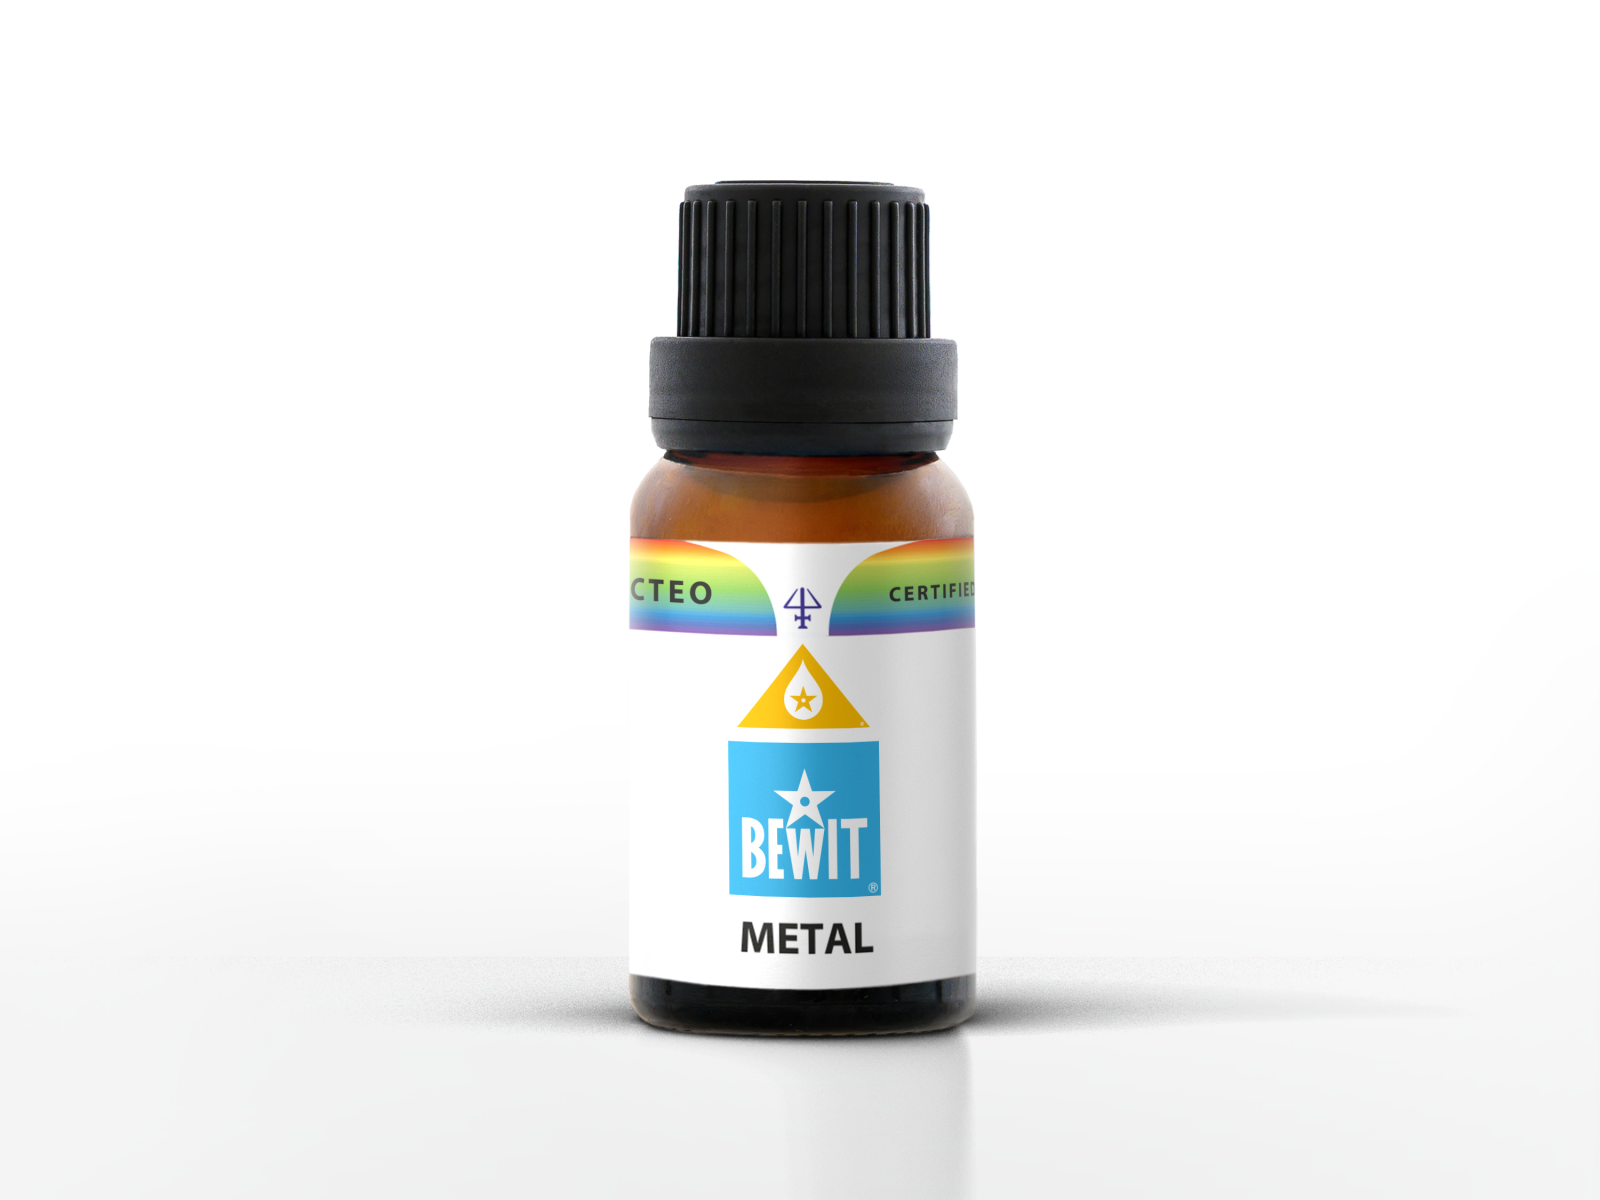 BEWIT METAL - Blend of essential oils - 1